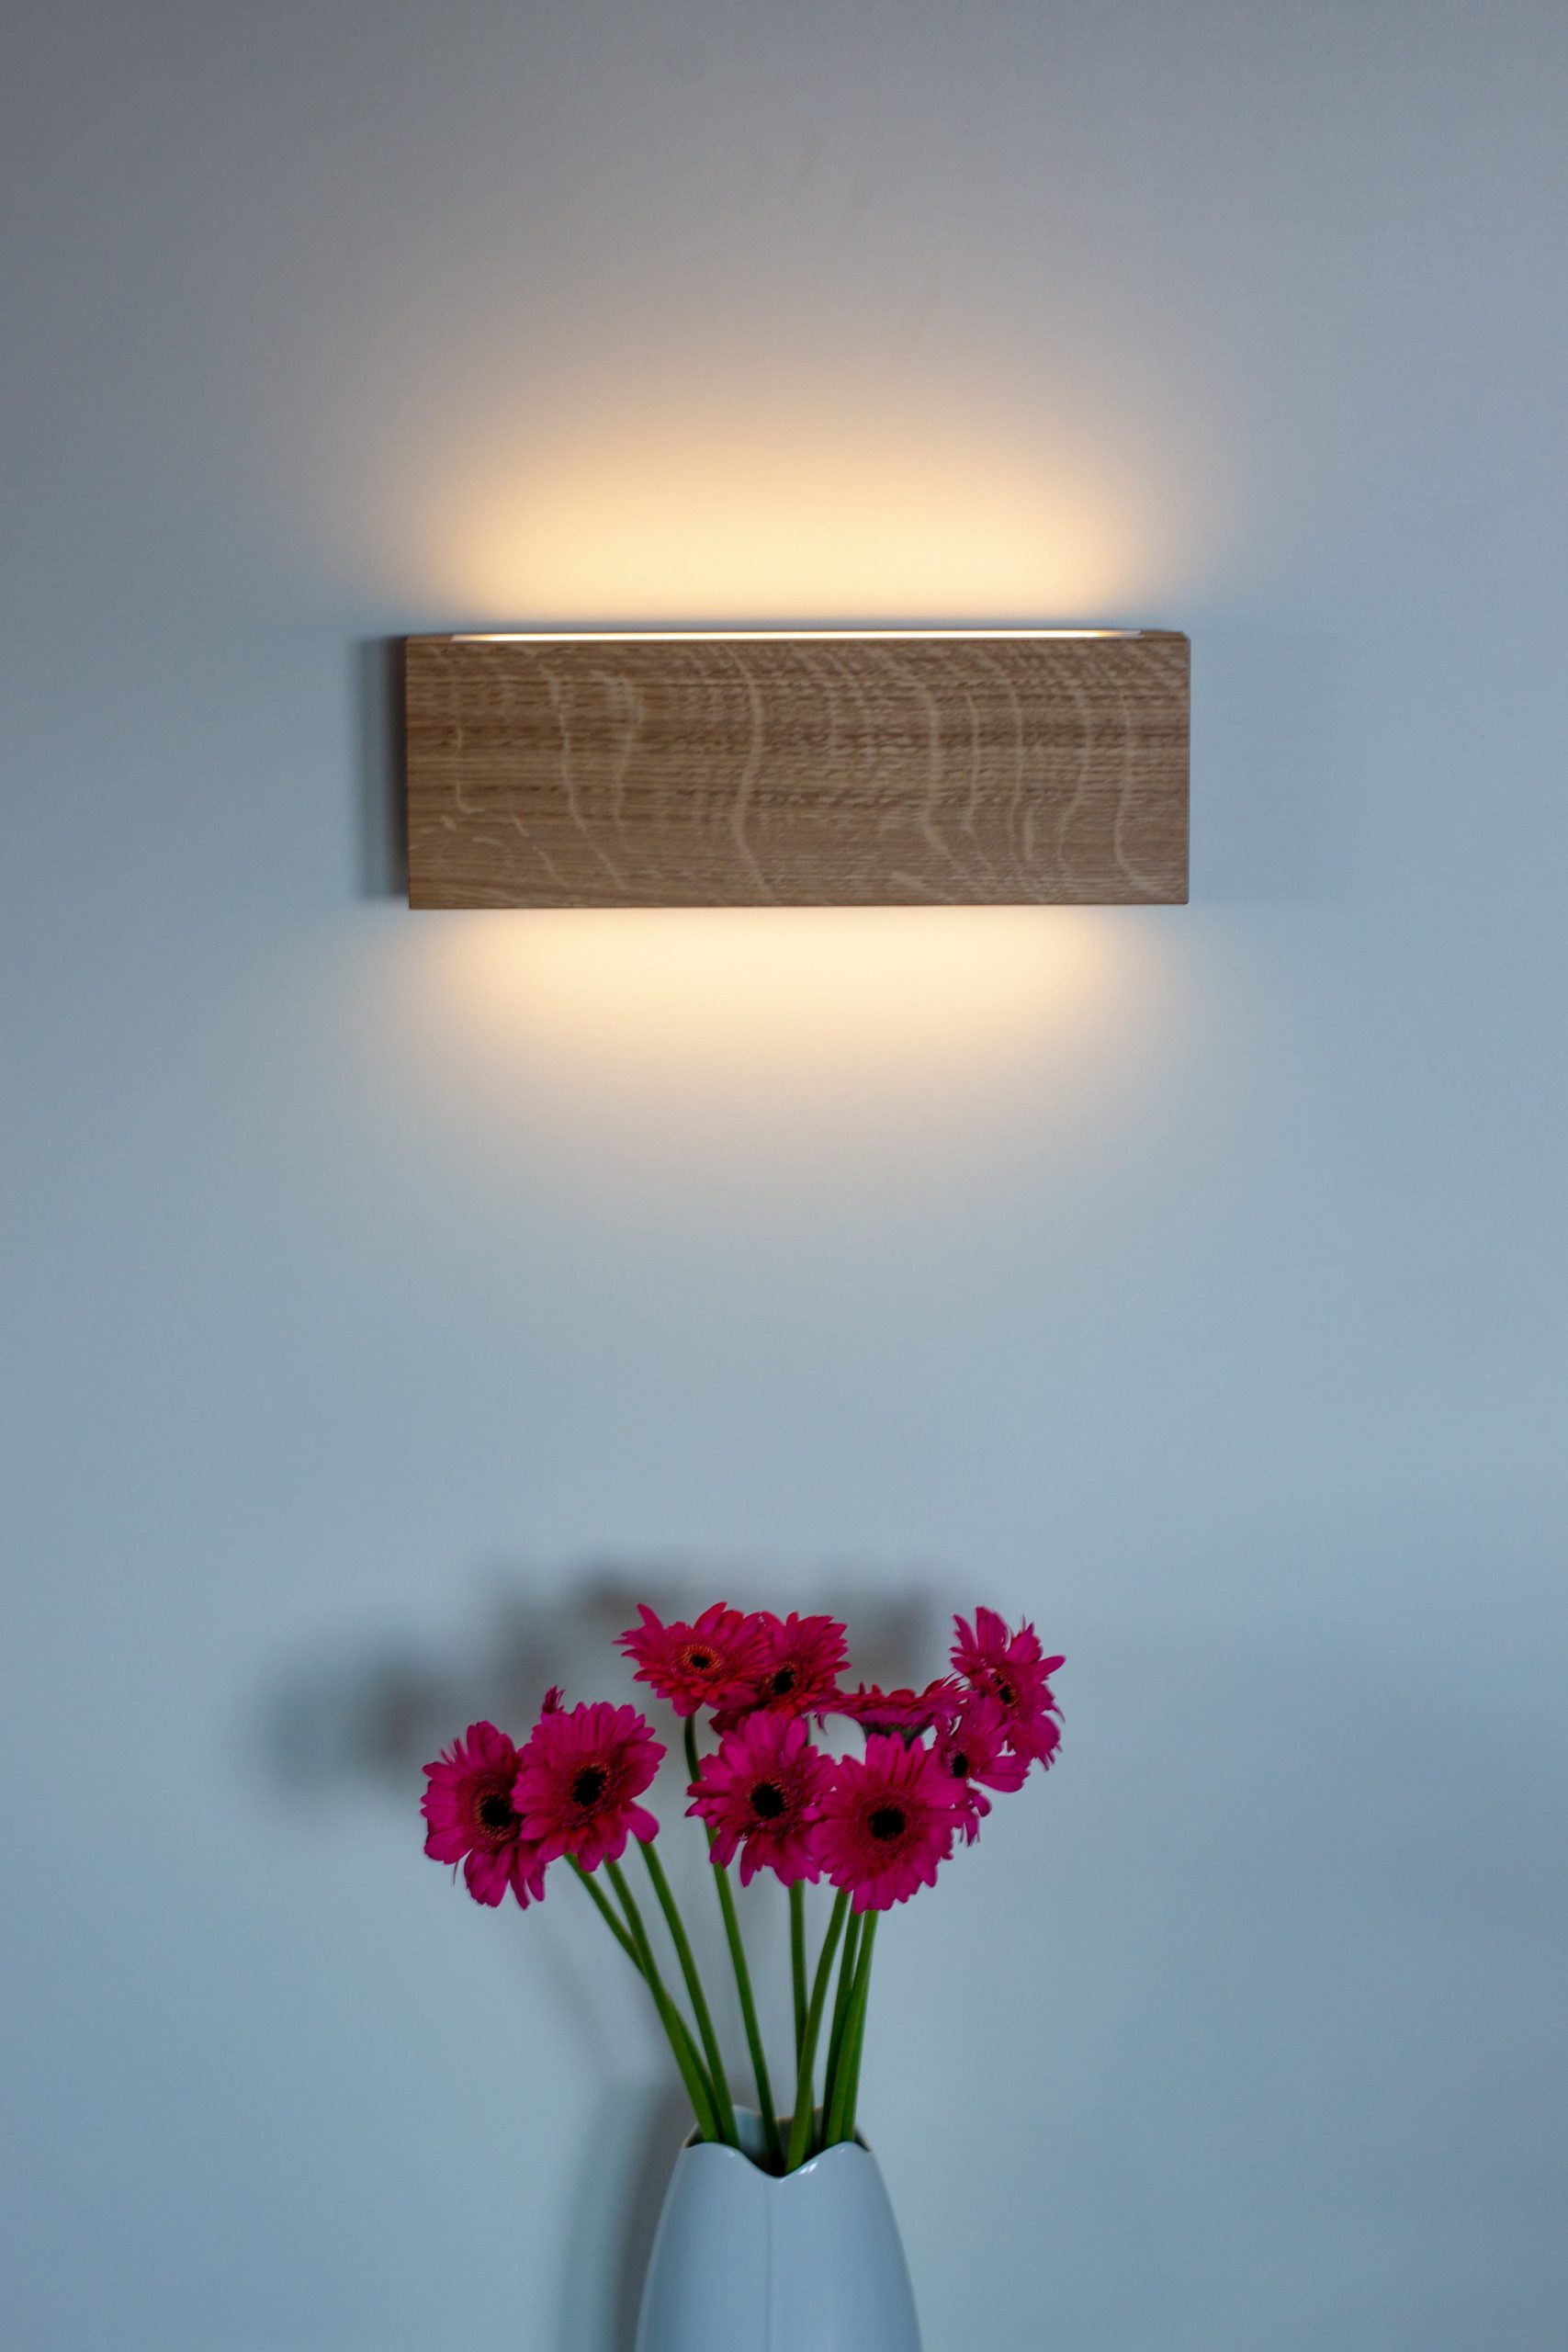 Đèn ốp tường cần có đủ ánh sáng để làm nổi bật vị trí đèn trang trí trong nhà